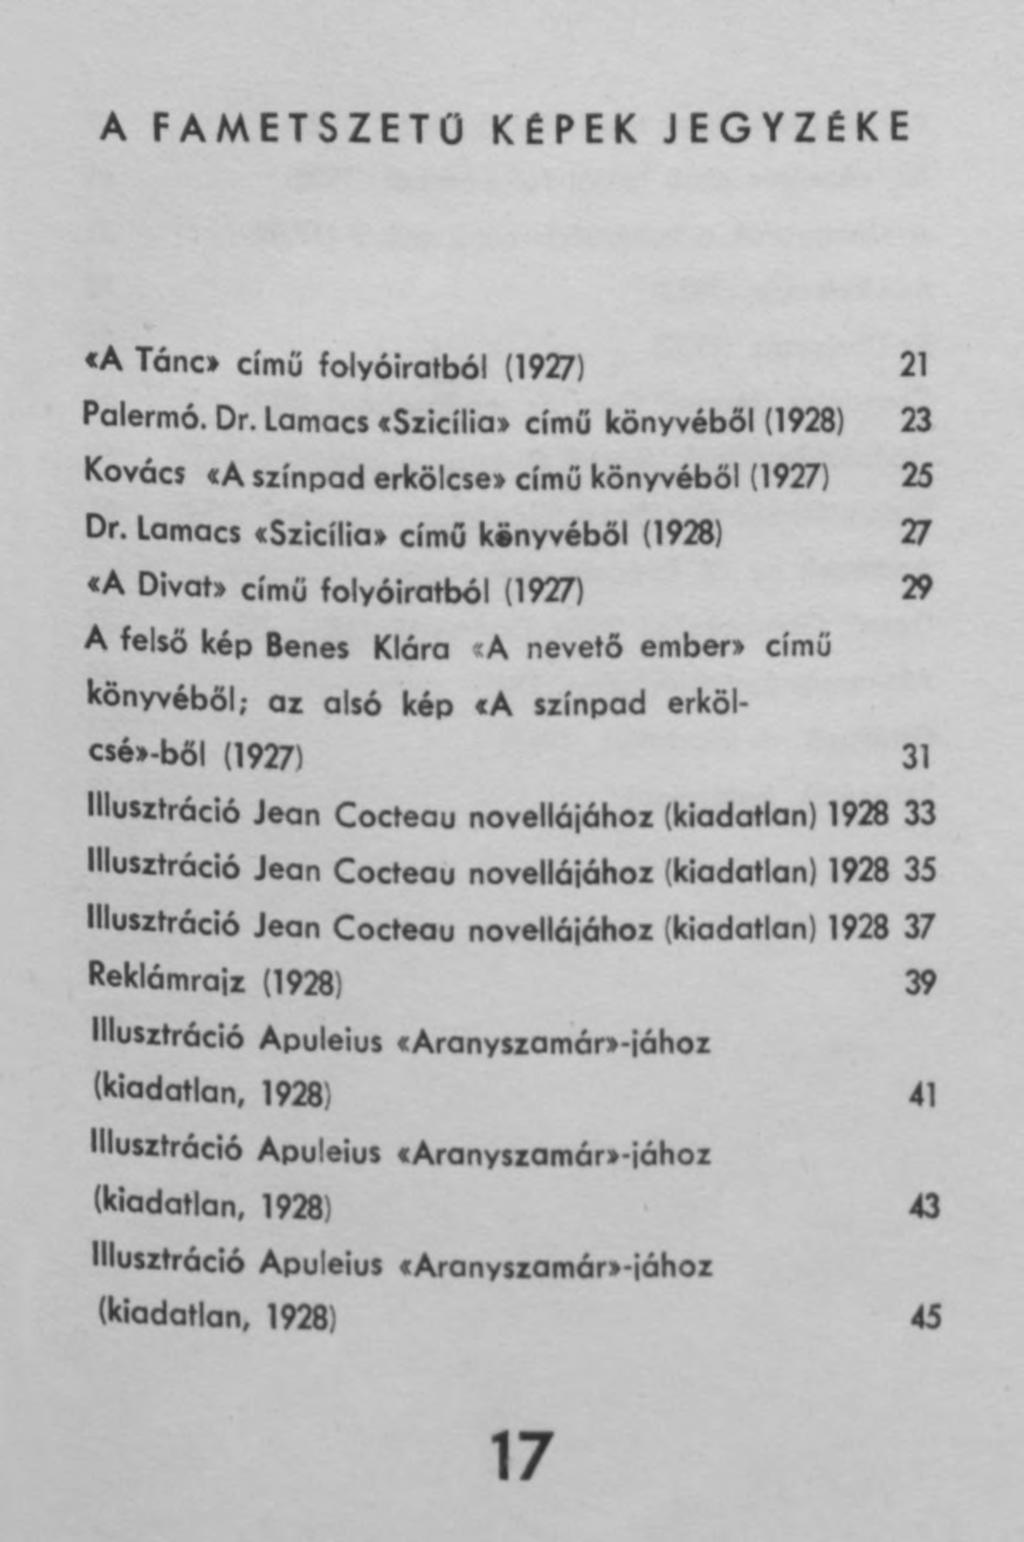 A FAMETSZETÜ KÉPEK JEGYZÉKE «A Tánc* című folyóiratból (1927) 21 Palermo. Dr. Lamacs cszicíliai című könyvéből (1928) 23 Kovács «A színpad erkölcsei című könyvéből (1927) 25 Dr.